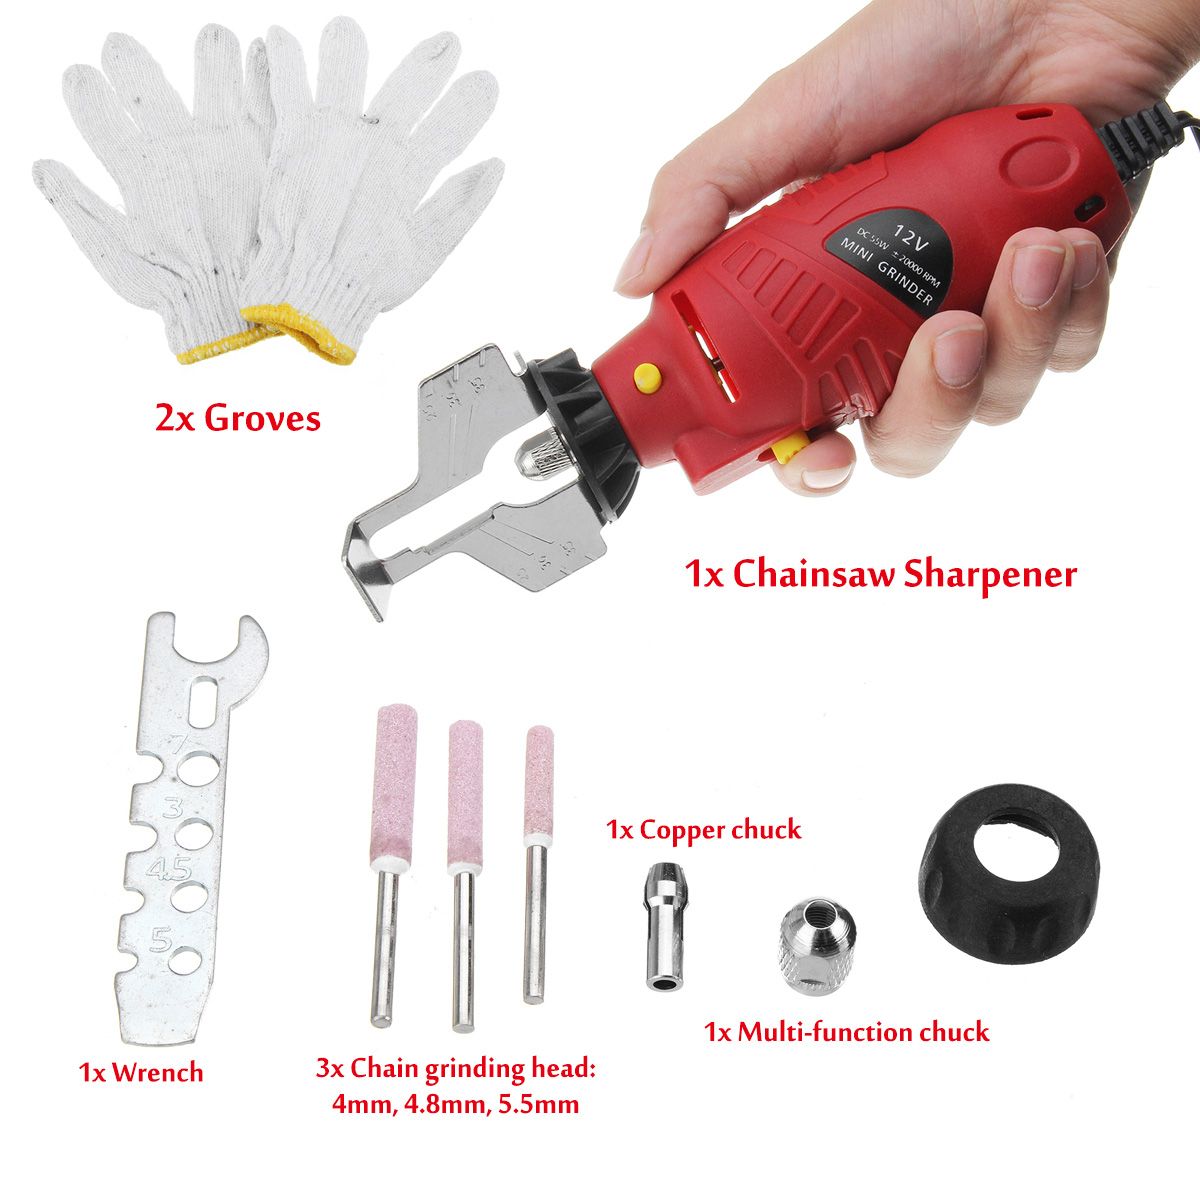 12V-Chainsaw-Sharpener-Electric-Handheld-Grinder-Tools-File-Set-1537976